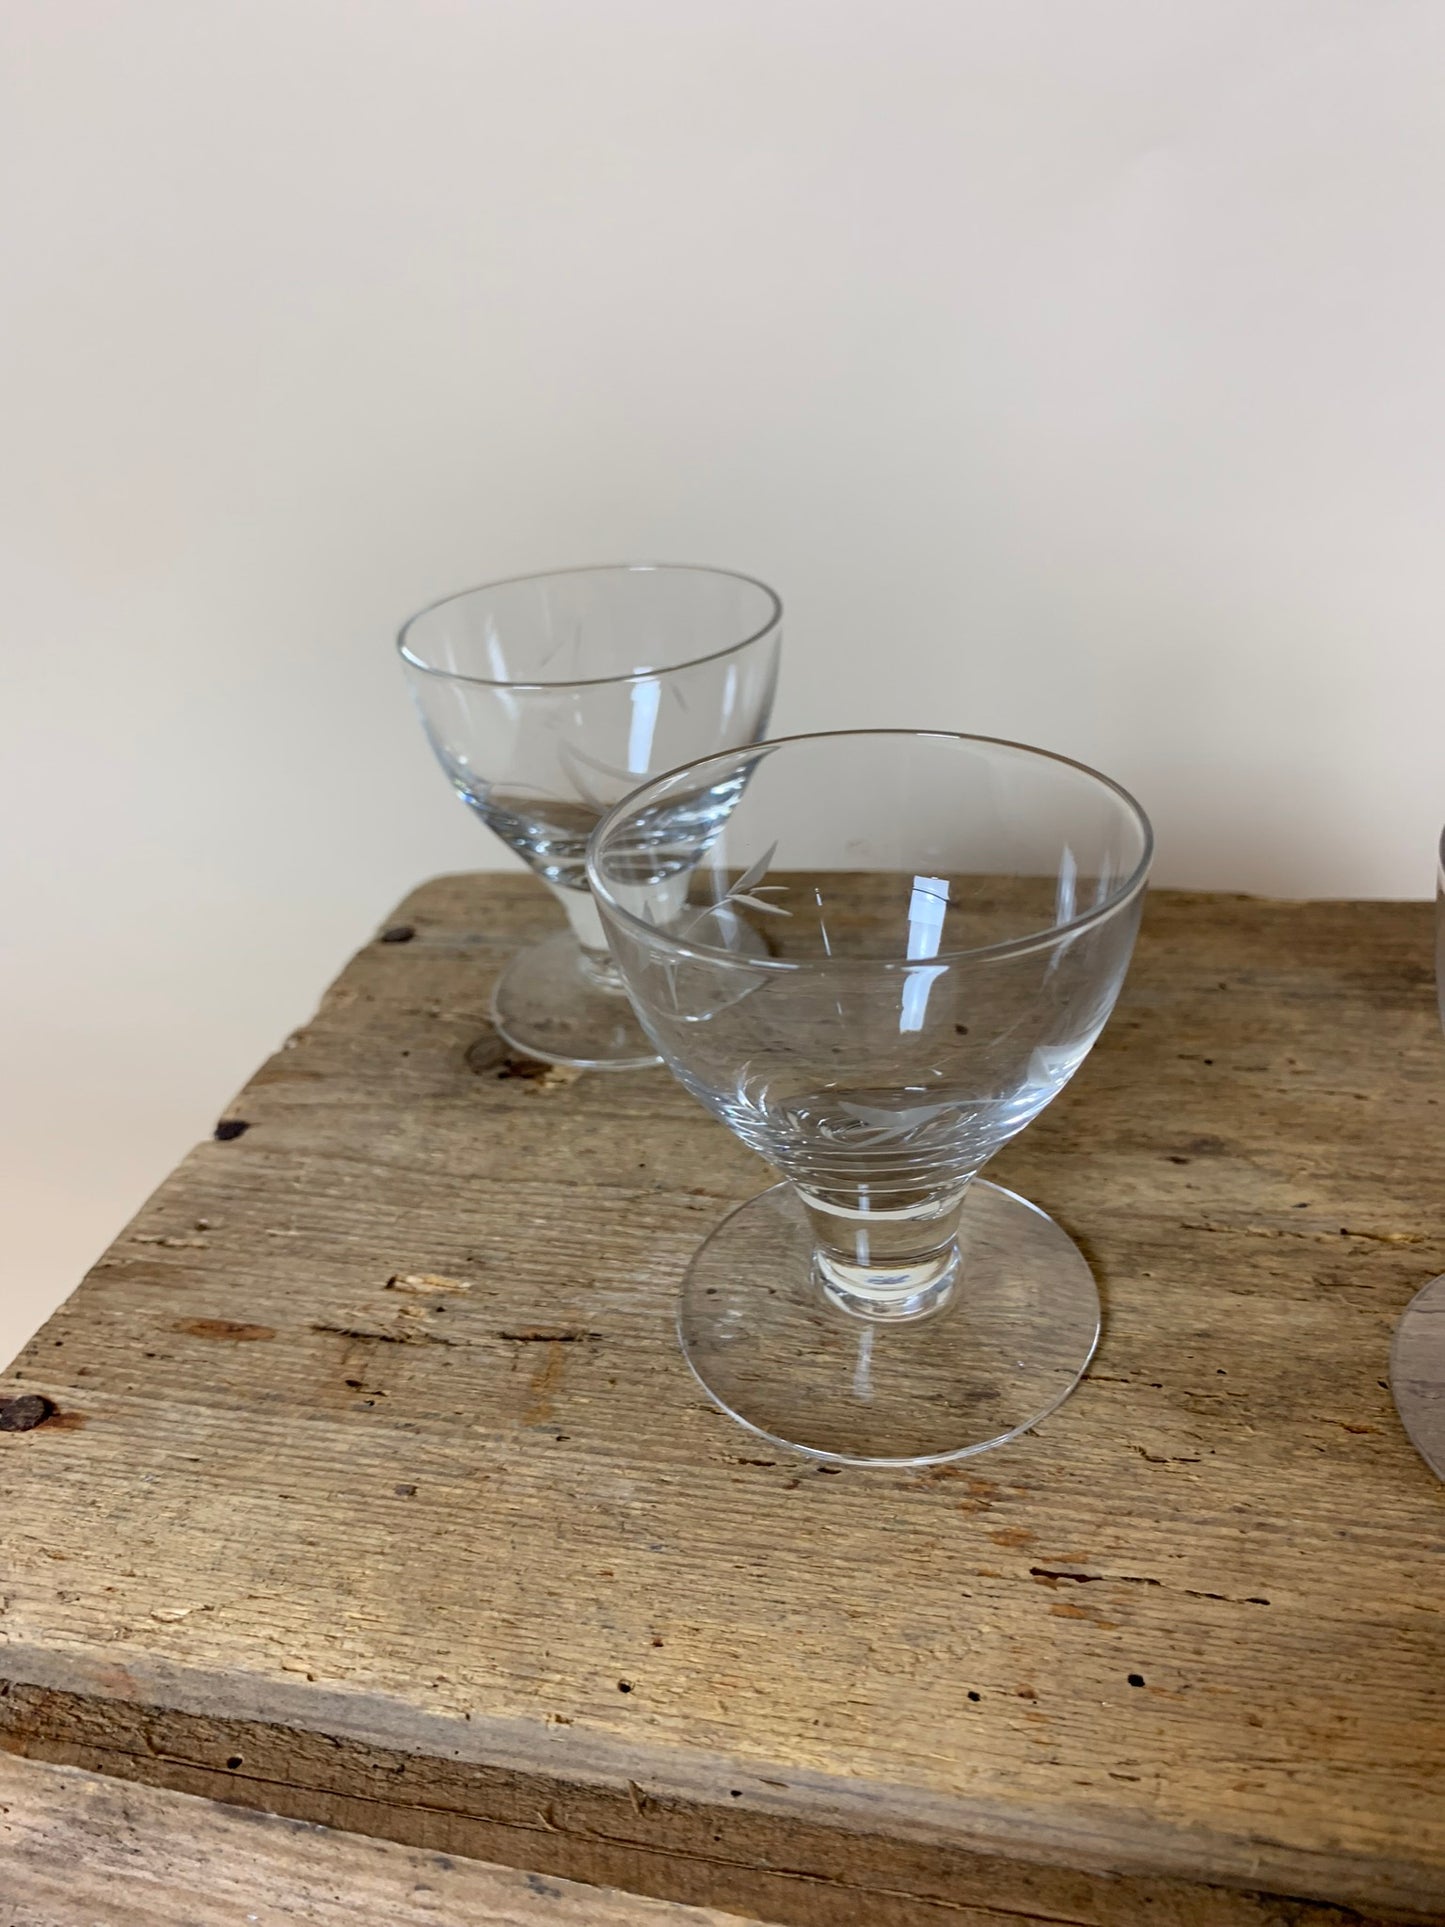 5 kleine feine Gläser - zusammen verkauft, der Preis gilt für alle 5